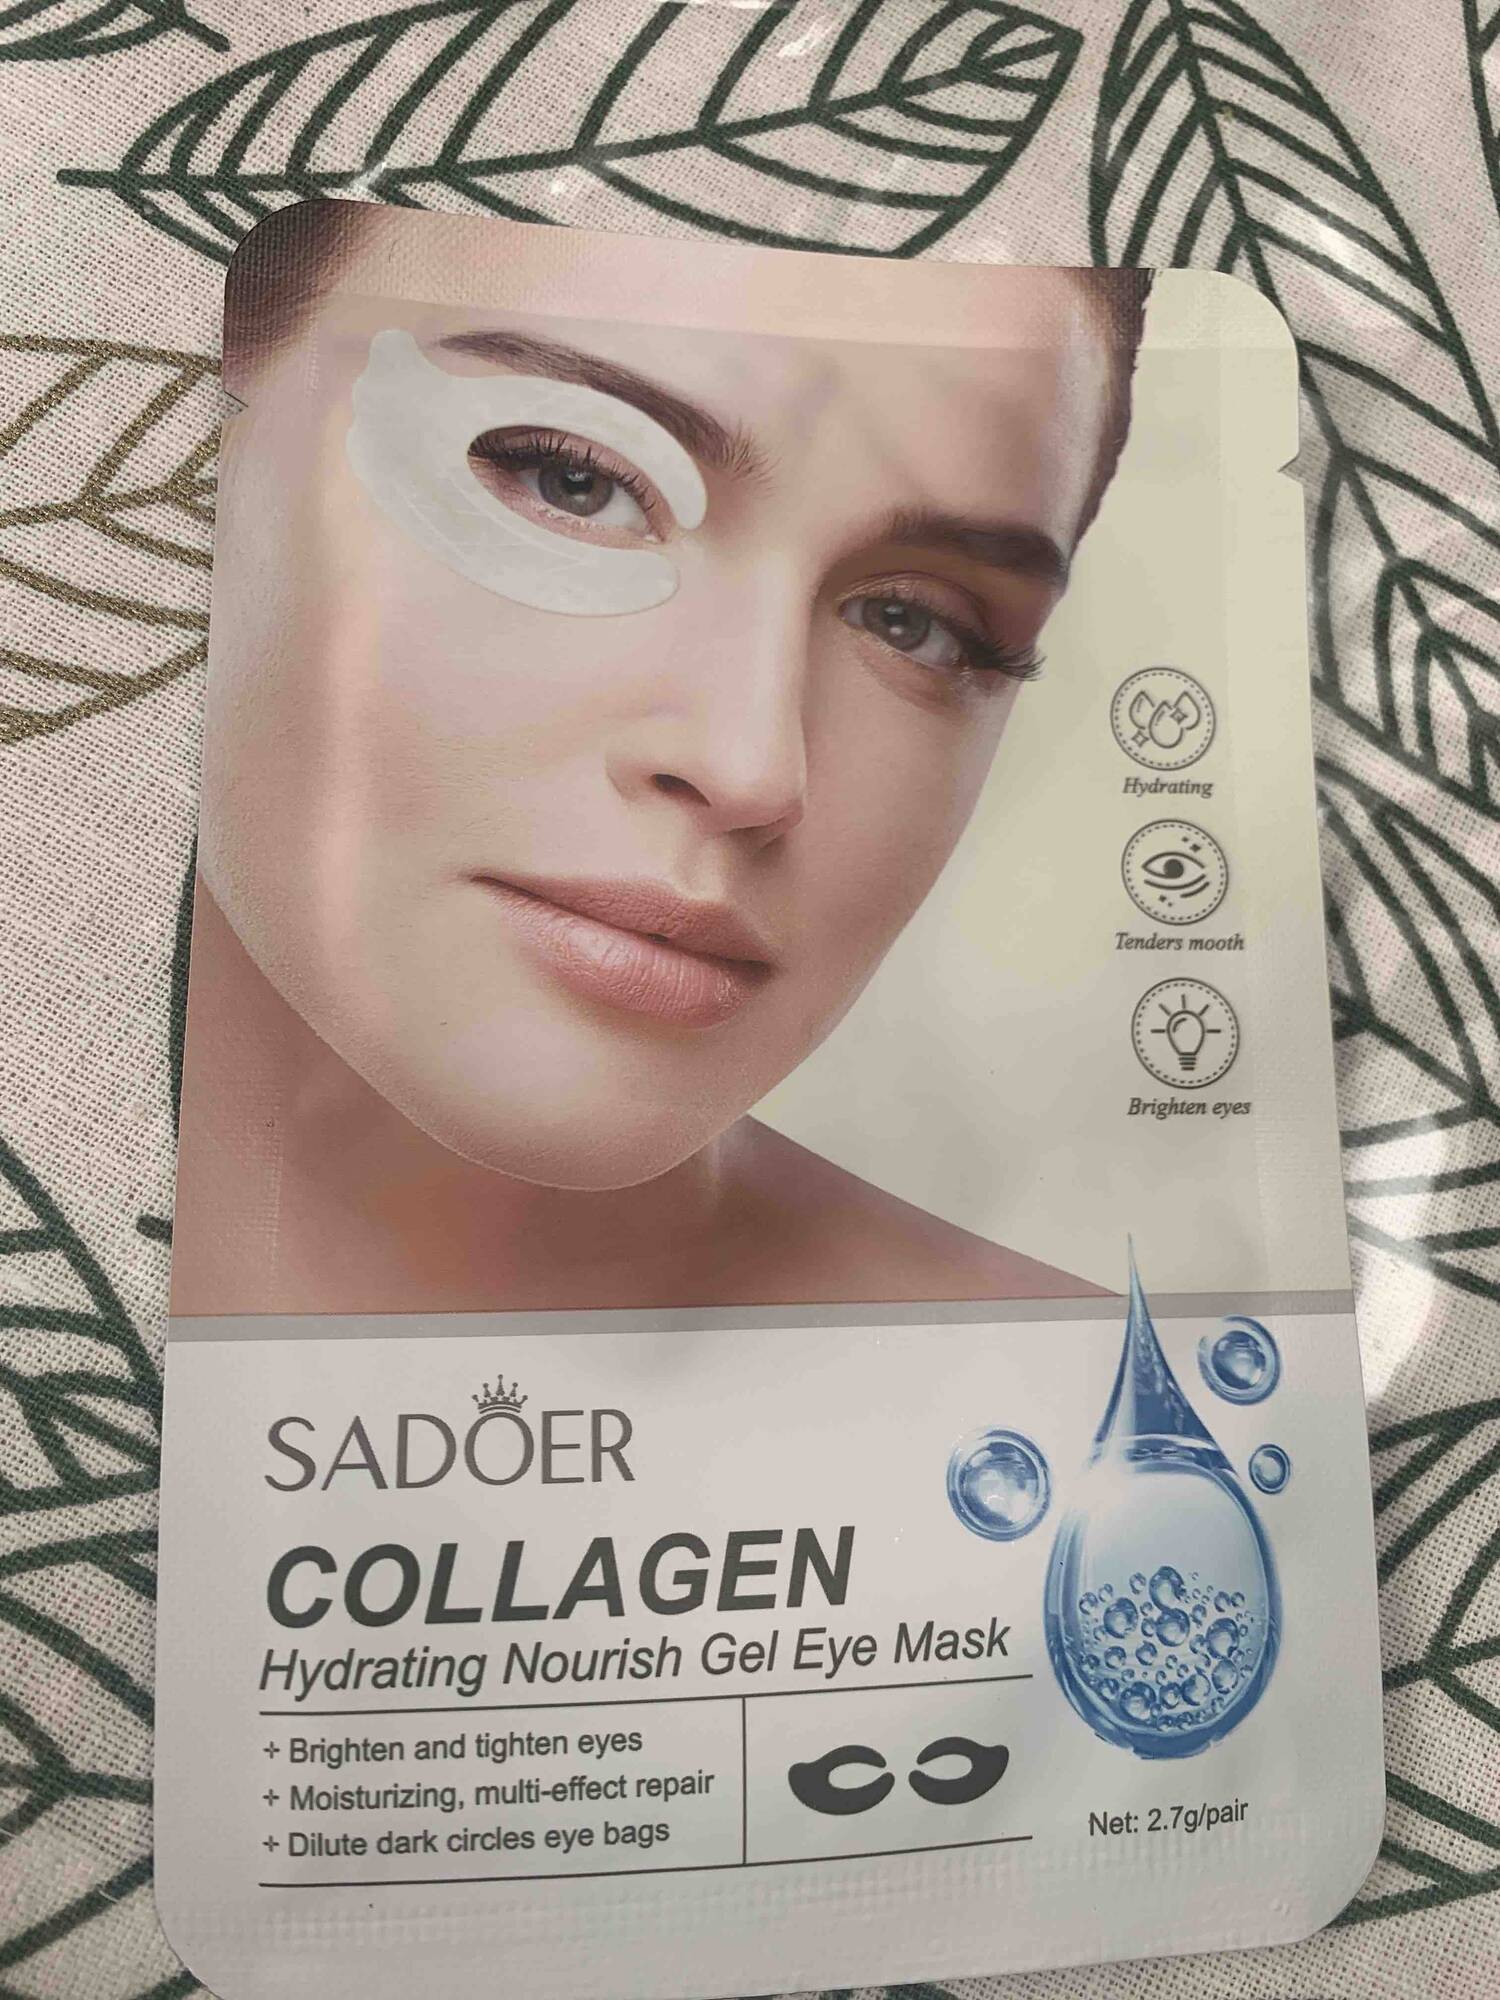 SADOER - Collagen hydrating nourish gel eye mask